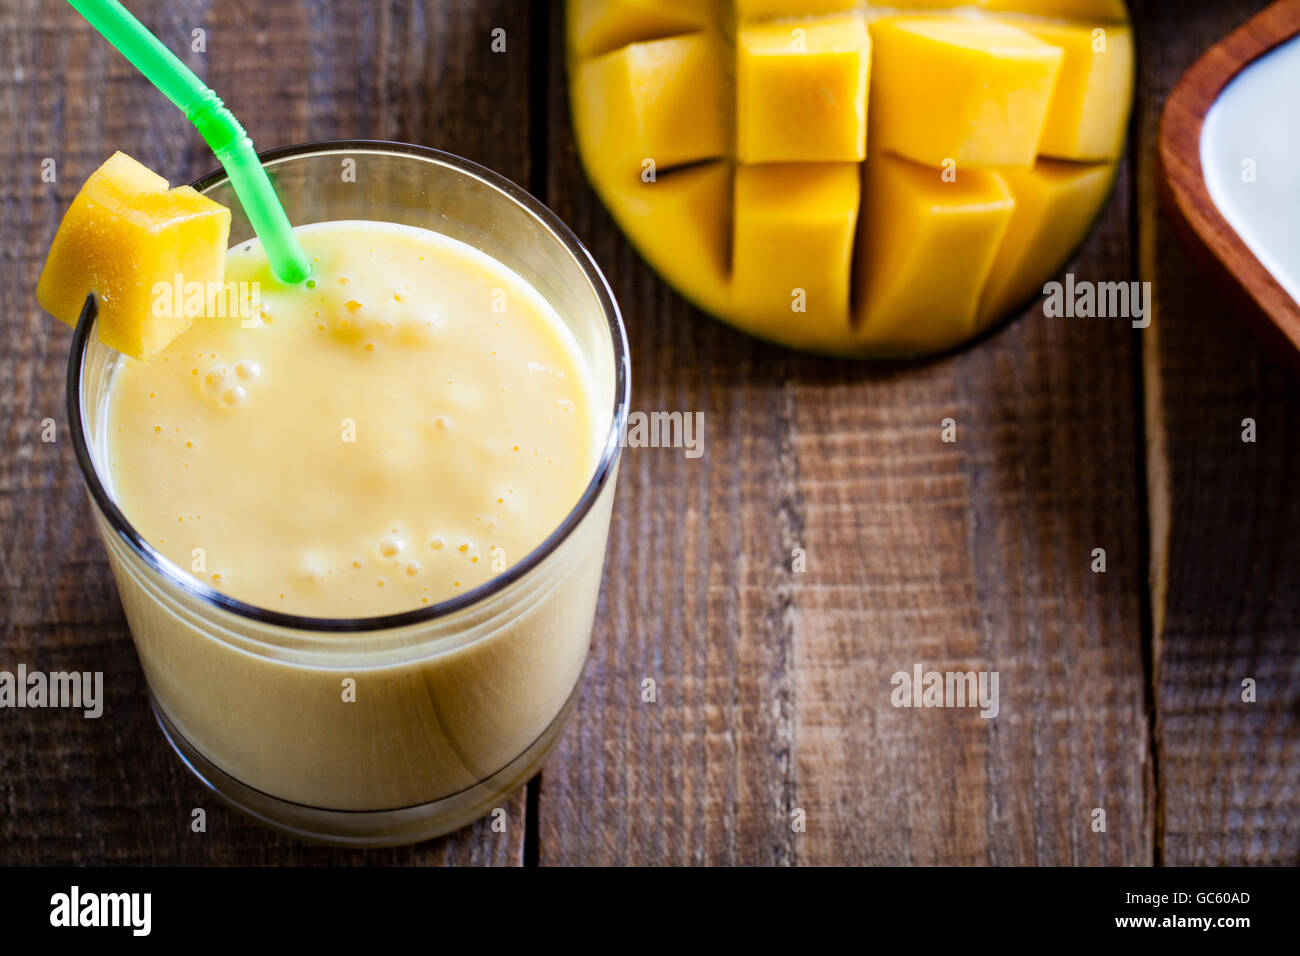 Verre de lassi à la mangue, boisson indienne de yaourt mélangé avec du miel et de mangue, aromatisée à la cardamome. Banque D'Images